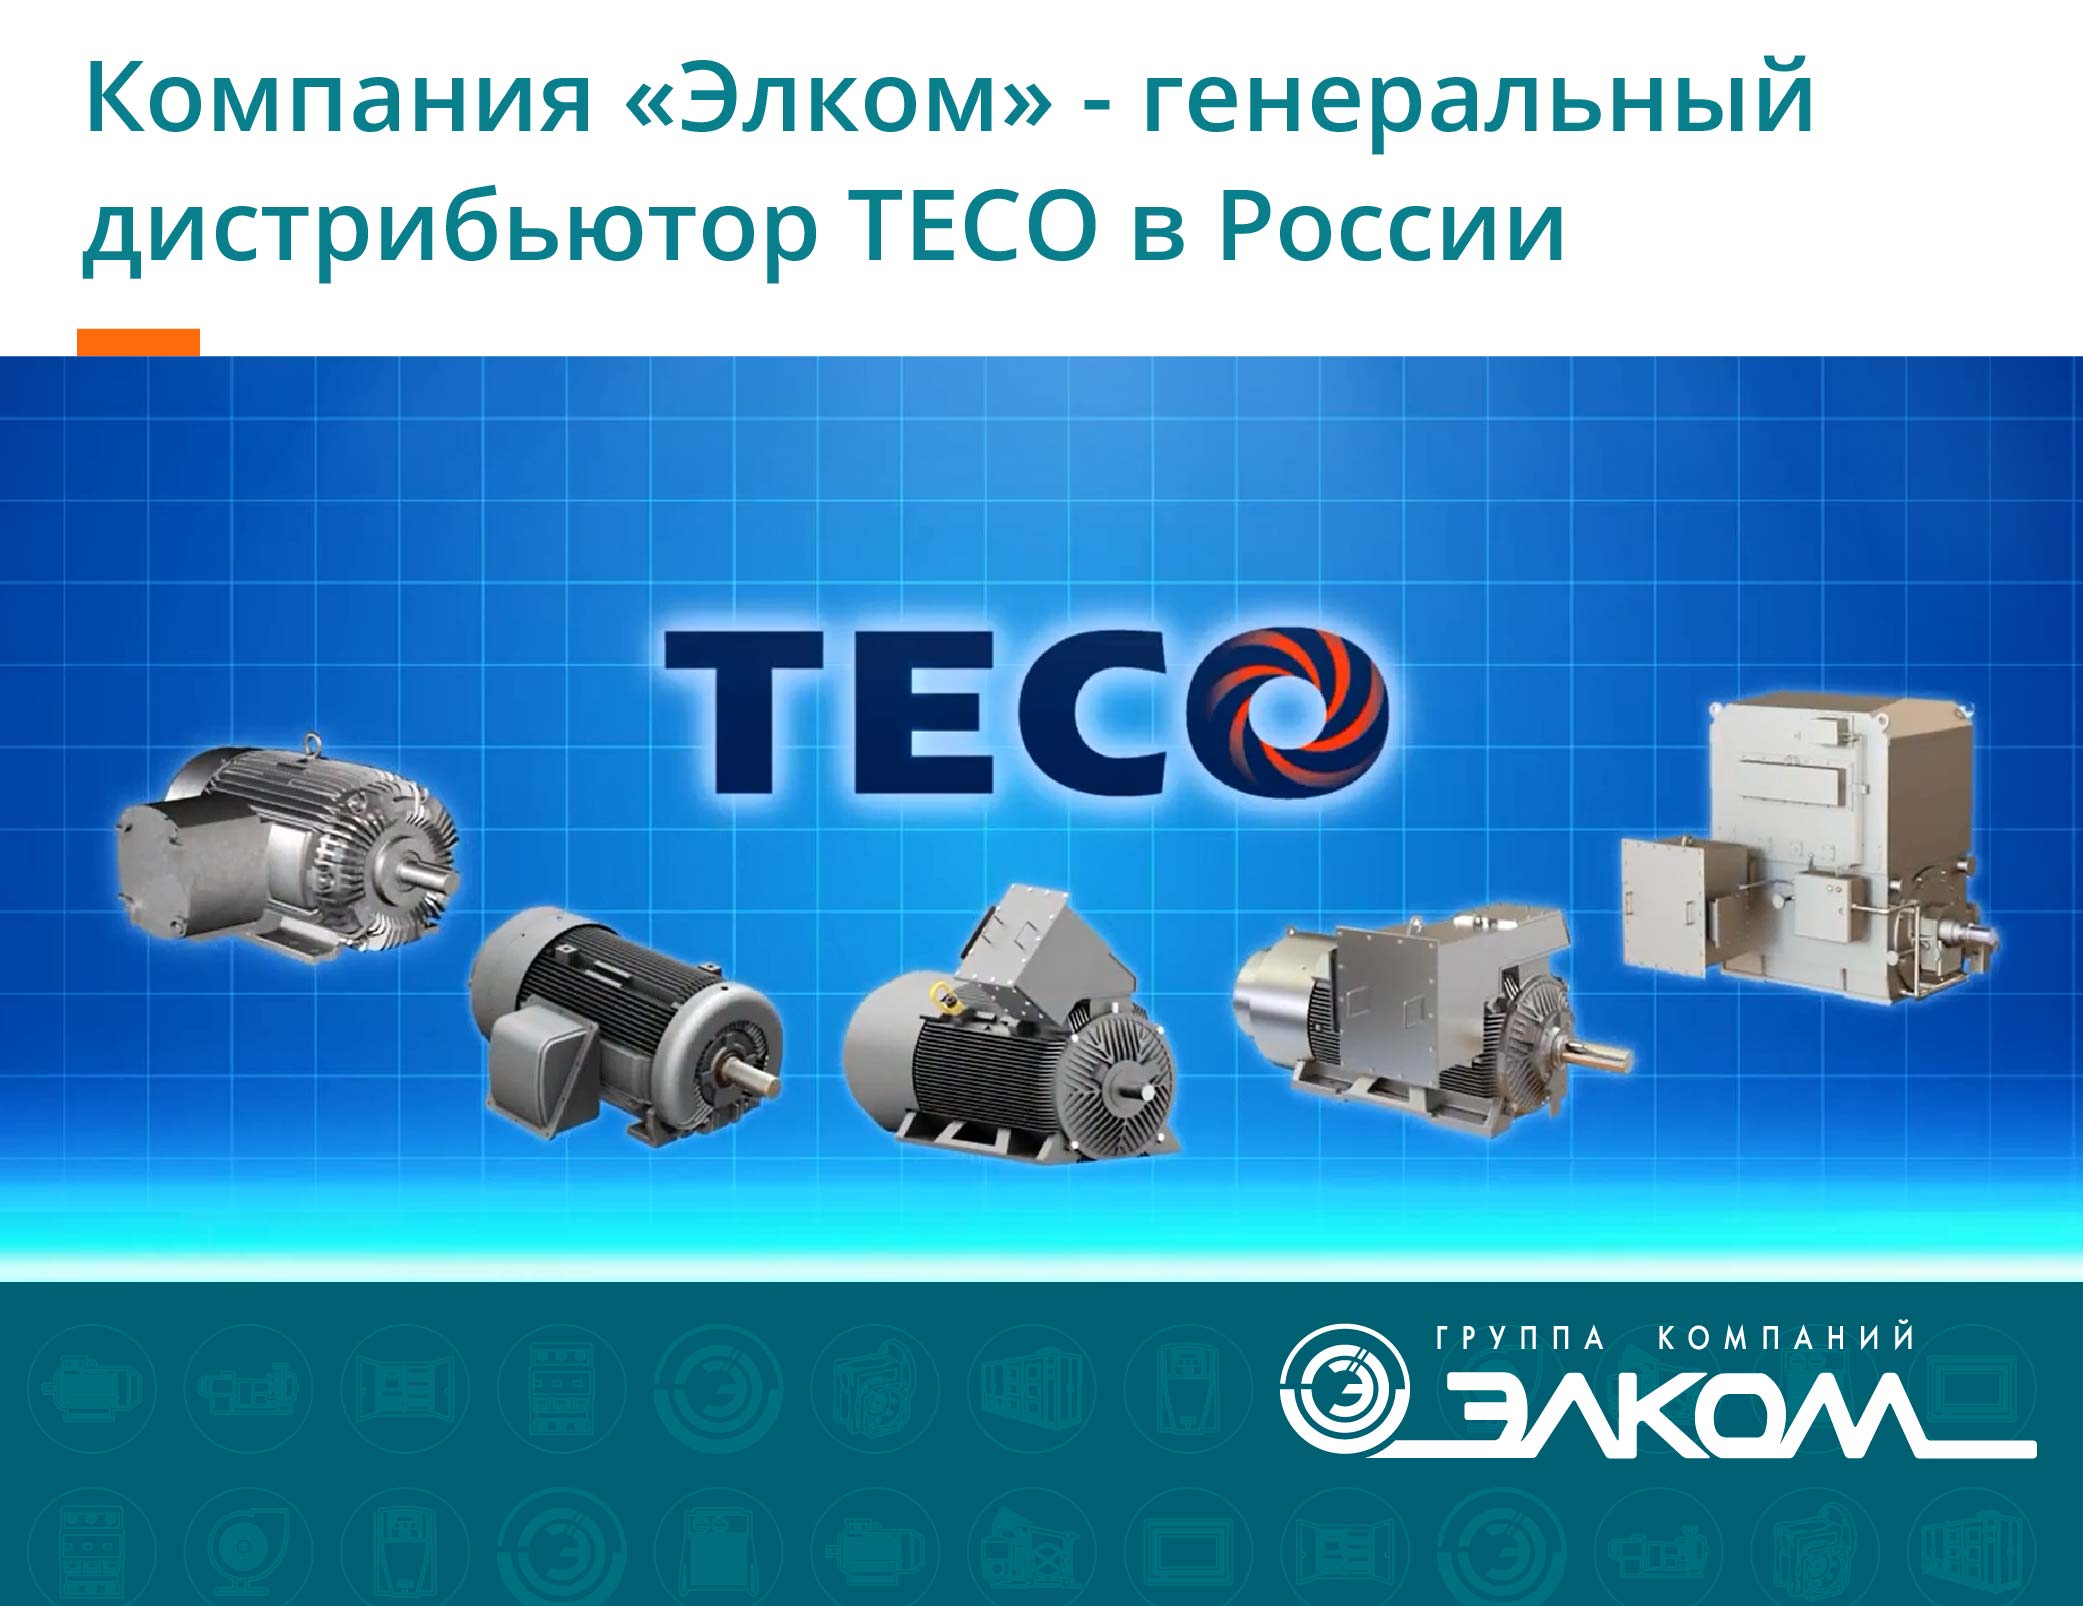 «Элком» - генеральный дистрибьютор TECO в России